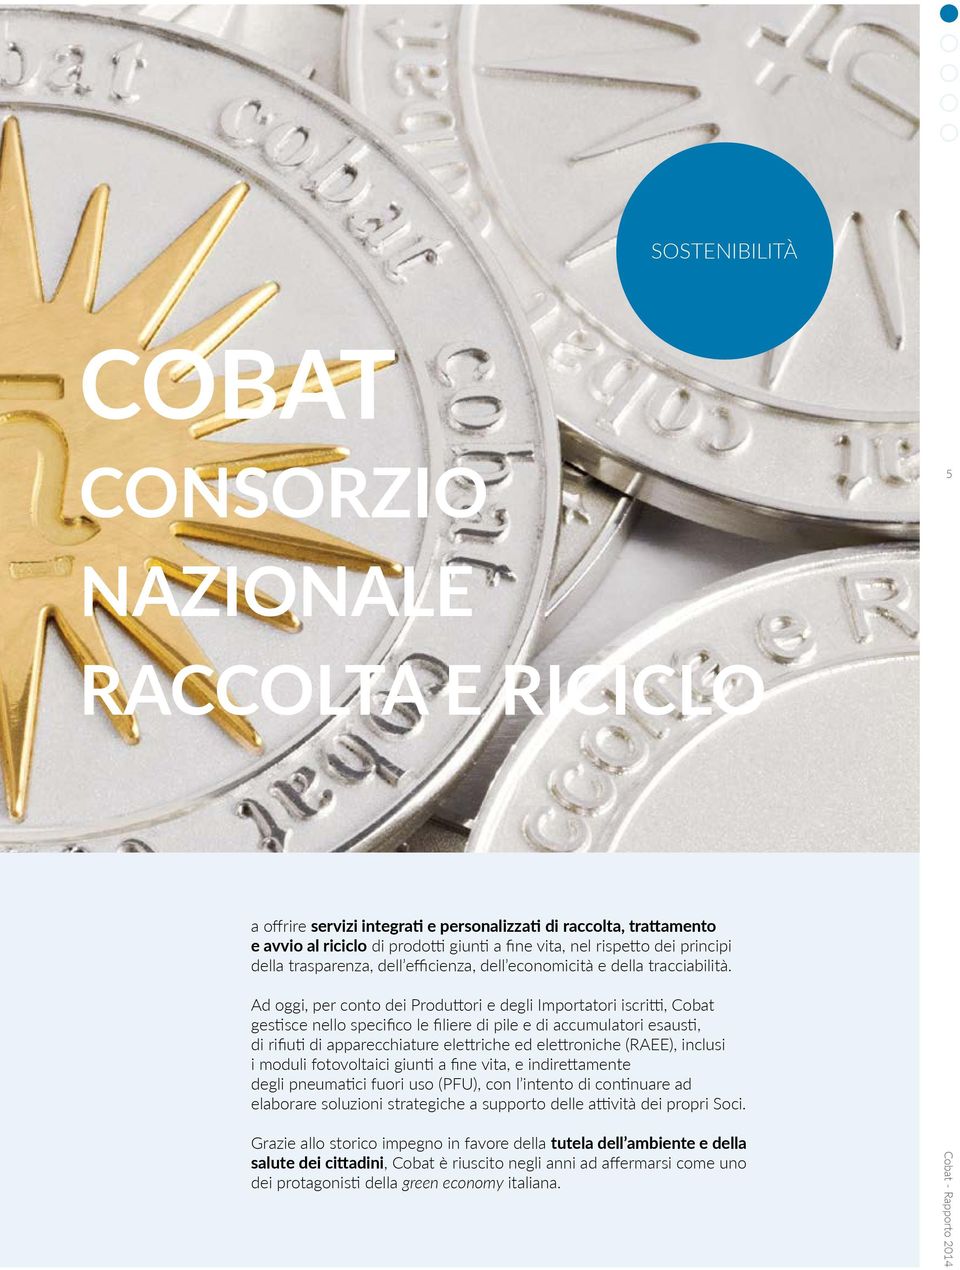 Ad oggi, per conto dei Produttori e degli Importatori iscritti, Cobat gestisce nello specifico le filiere di pile e di accumulatori esausti, di rifiuti di apparecchiature elettriche ed elettroniche